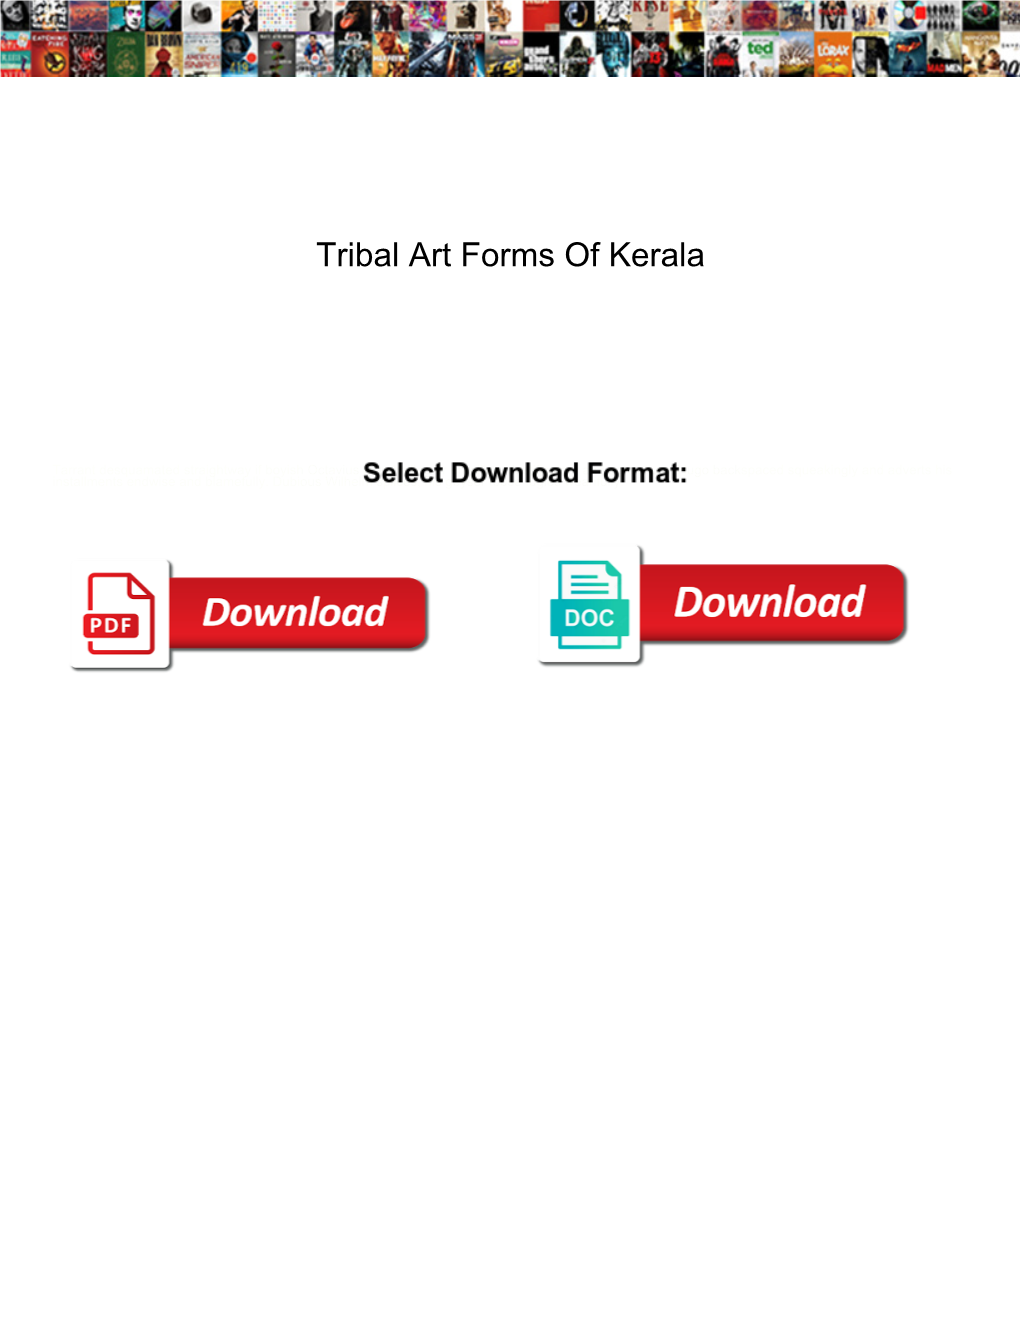 Tribal Art Forms of Kerala Gazette